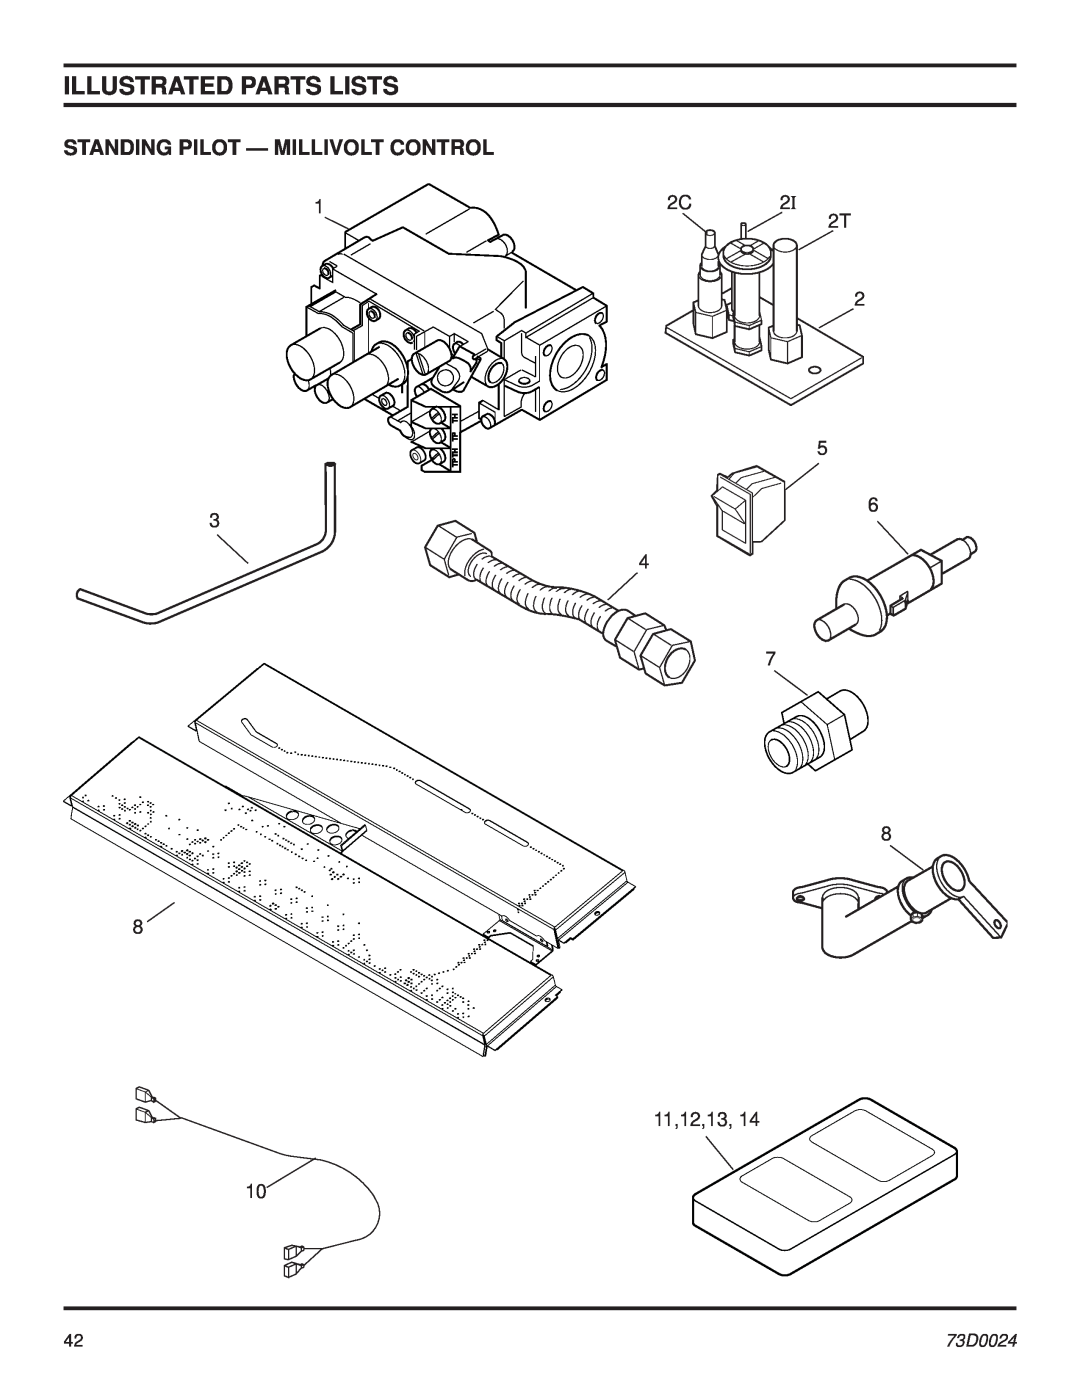 Monessen Hearth KHLDV SERIES manual Standing Pilot - Millivolt Control, Illustrated Parts Lists, 1 3 8, 73D0024 